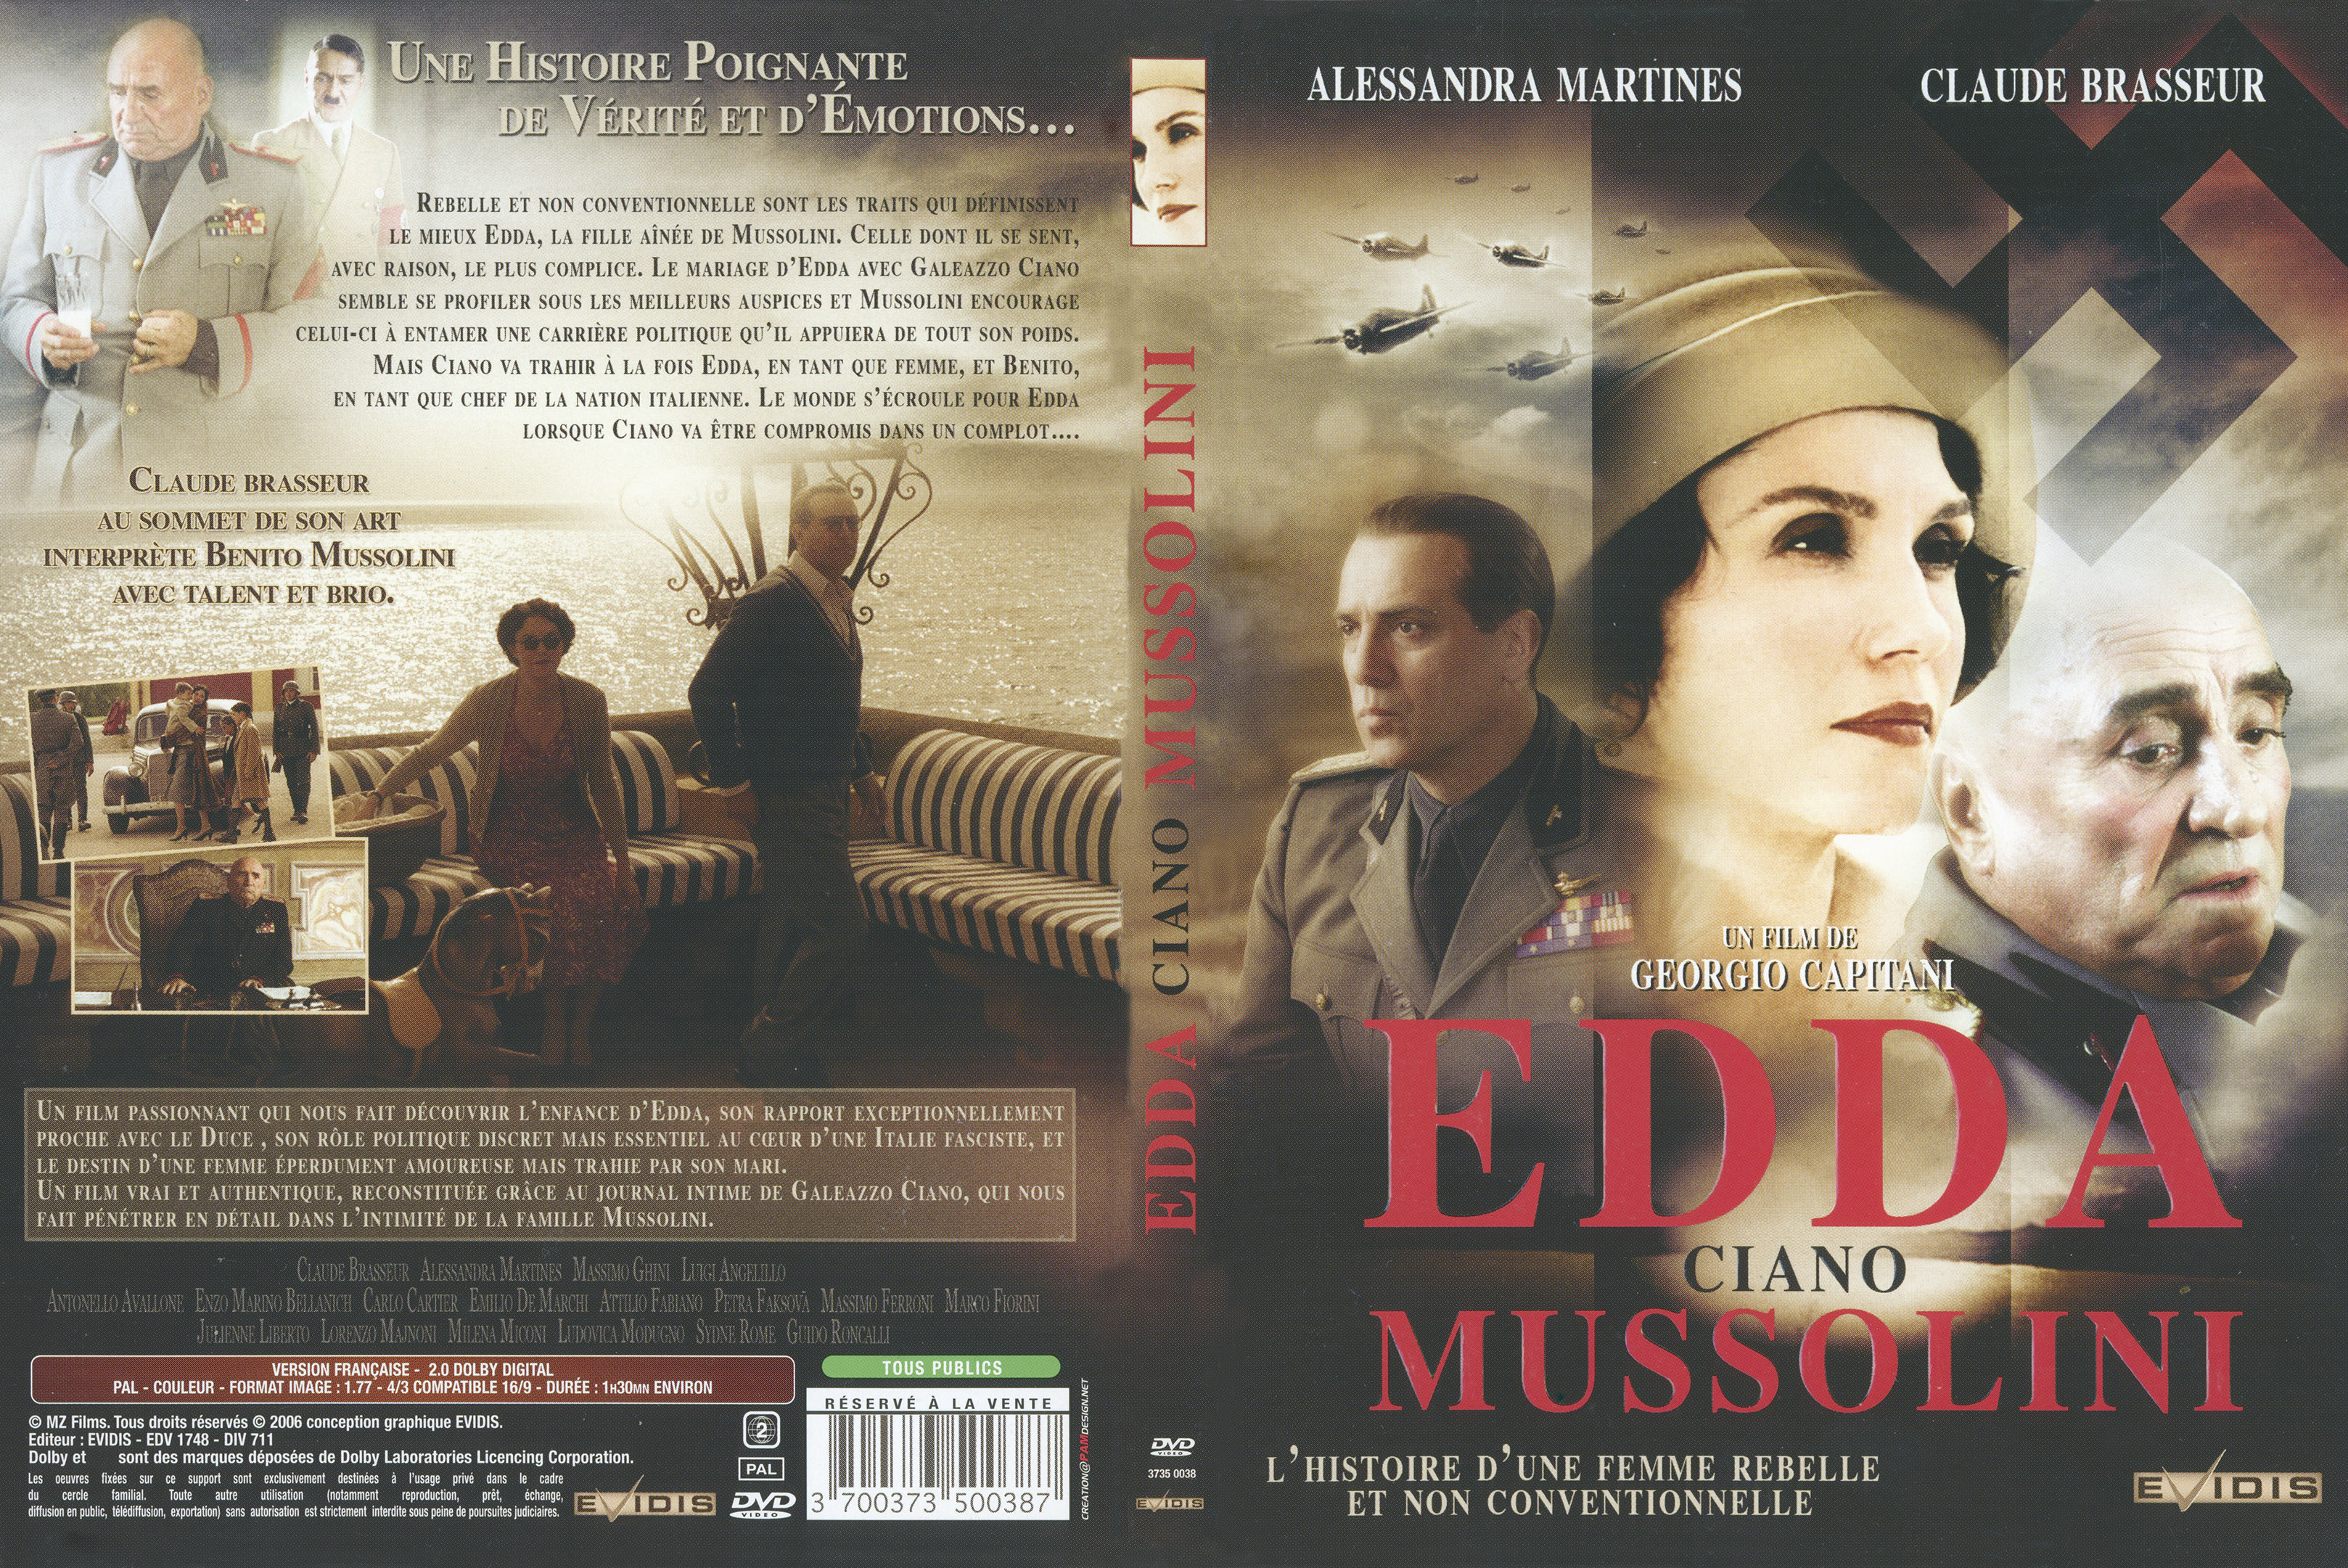 Jaquette DVD EDDA ciano mussolini